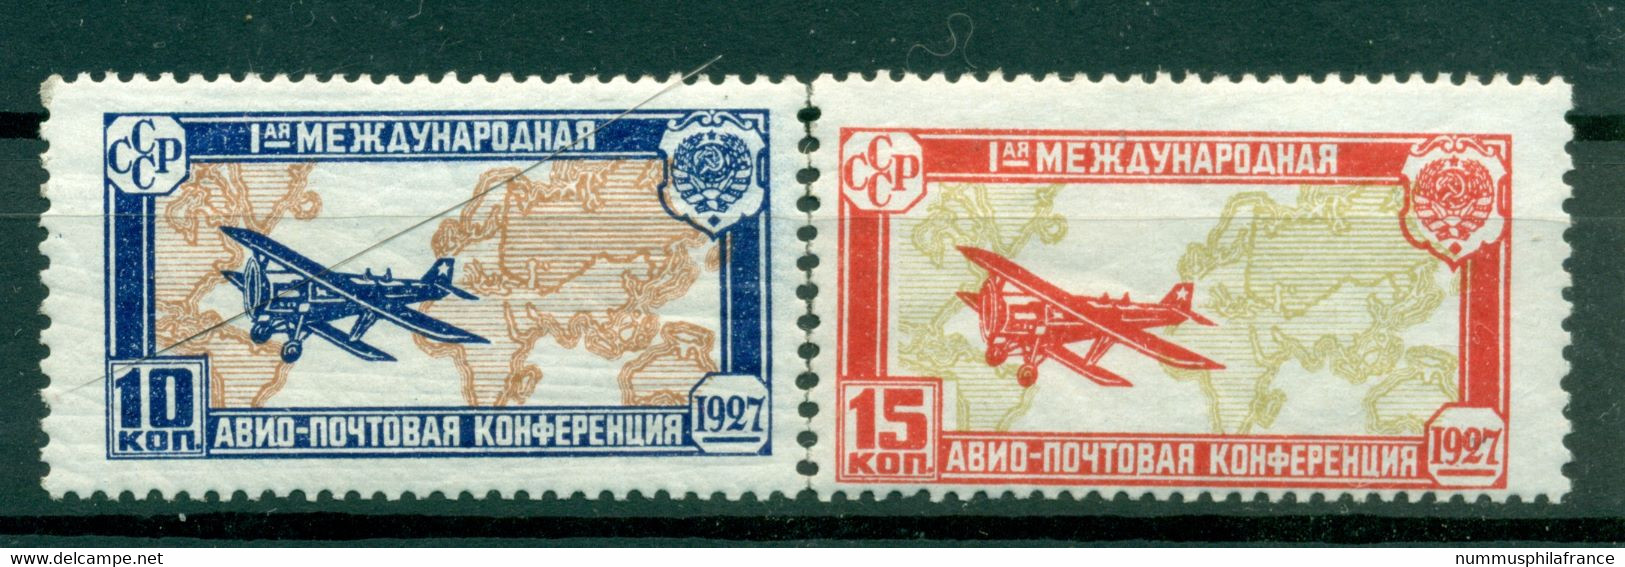 URSS 1927 - Michel N. 326/27 - Congrès De La Poste Aérienne ( Y & T N. 18/19 Poste Aérienne) - Neufs